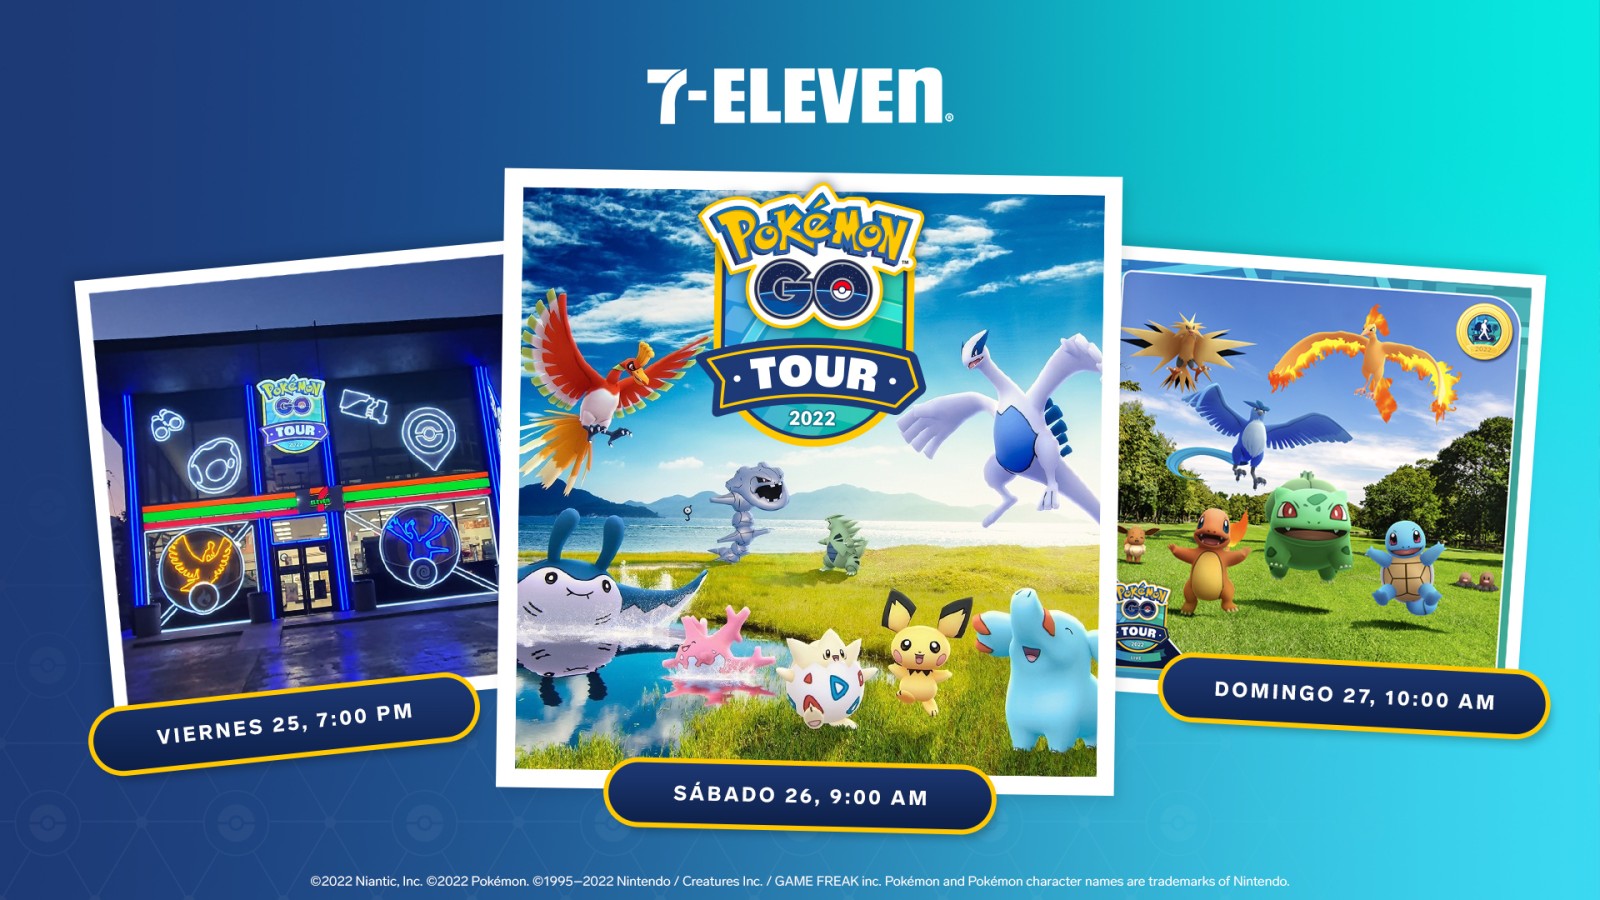 7-Eleven lanza evento legendario para celebrar el Pokémon GO Tour en México 3